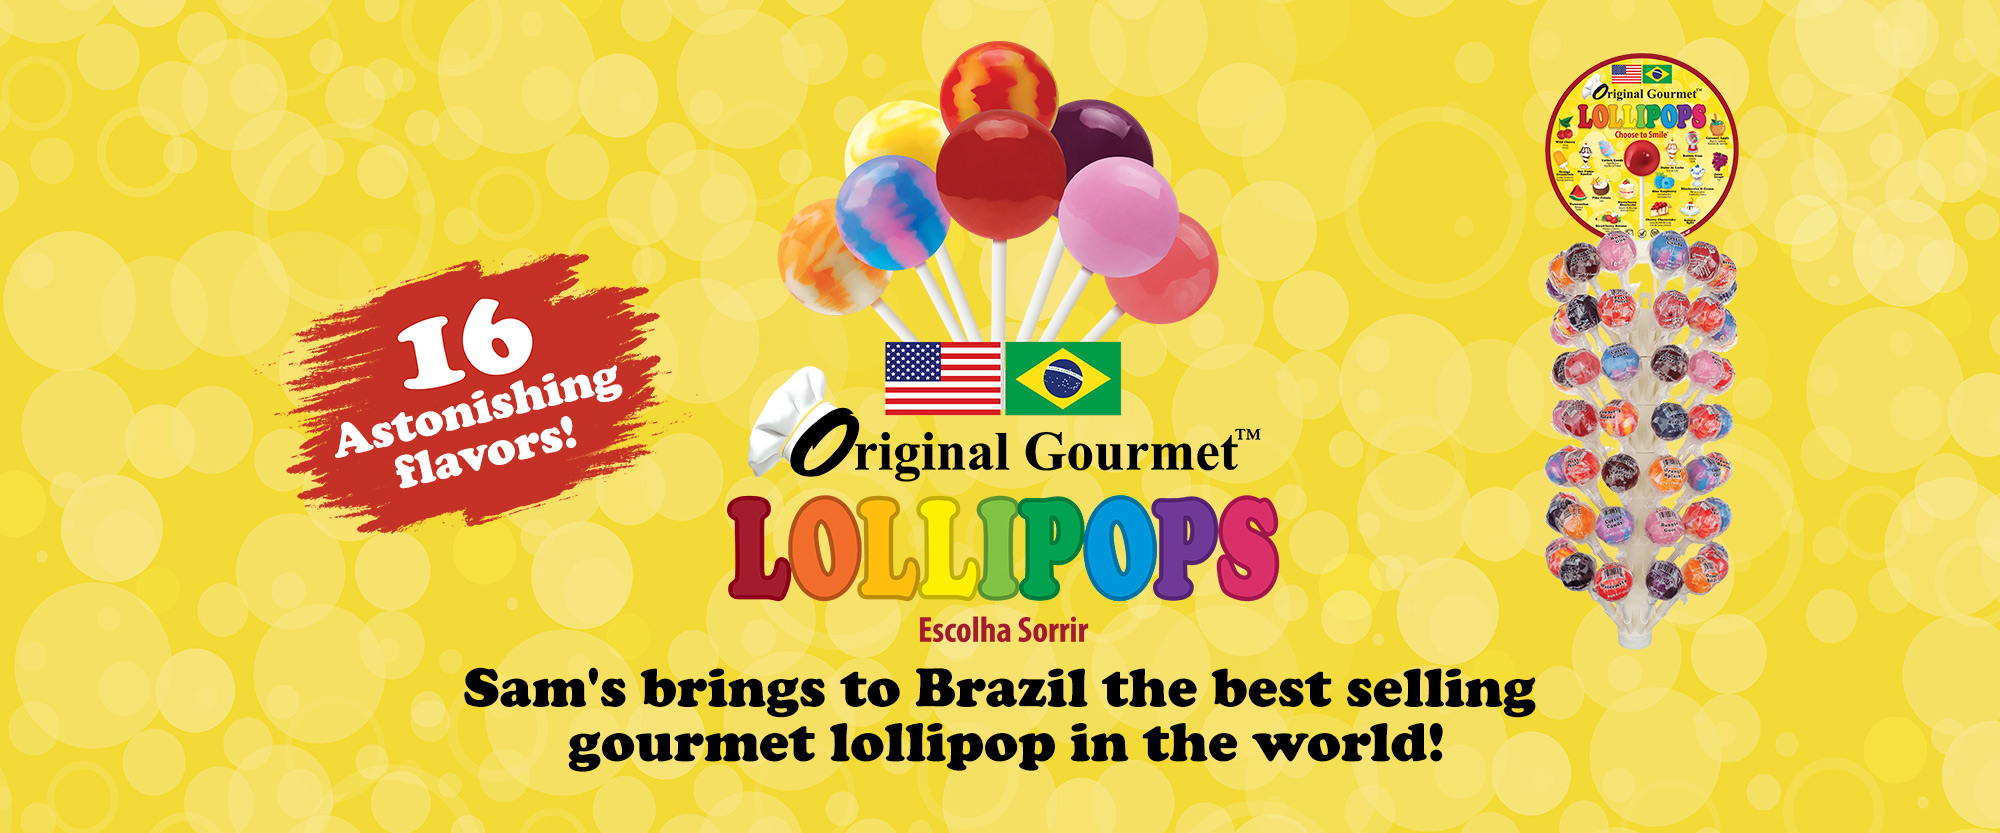 Original Gourmet Lollipop